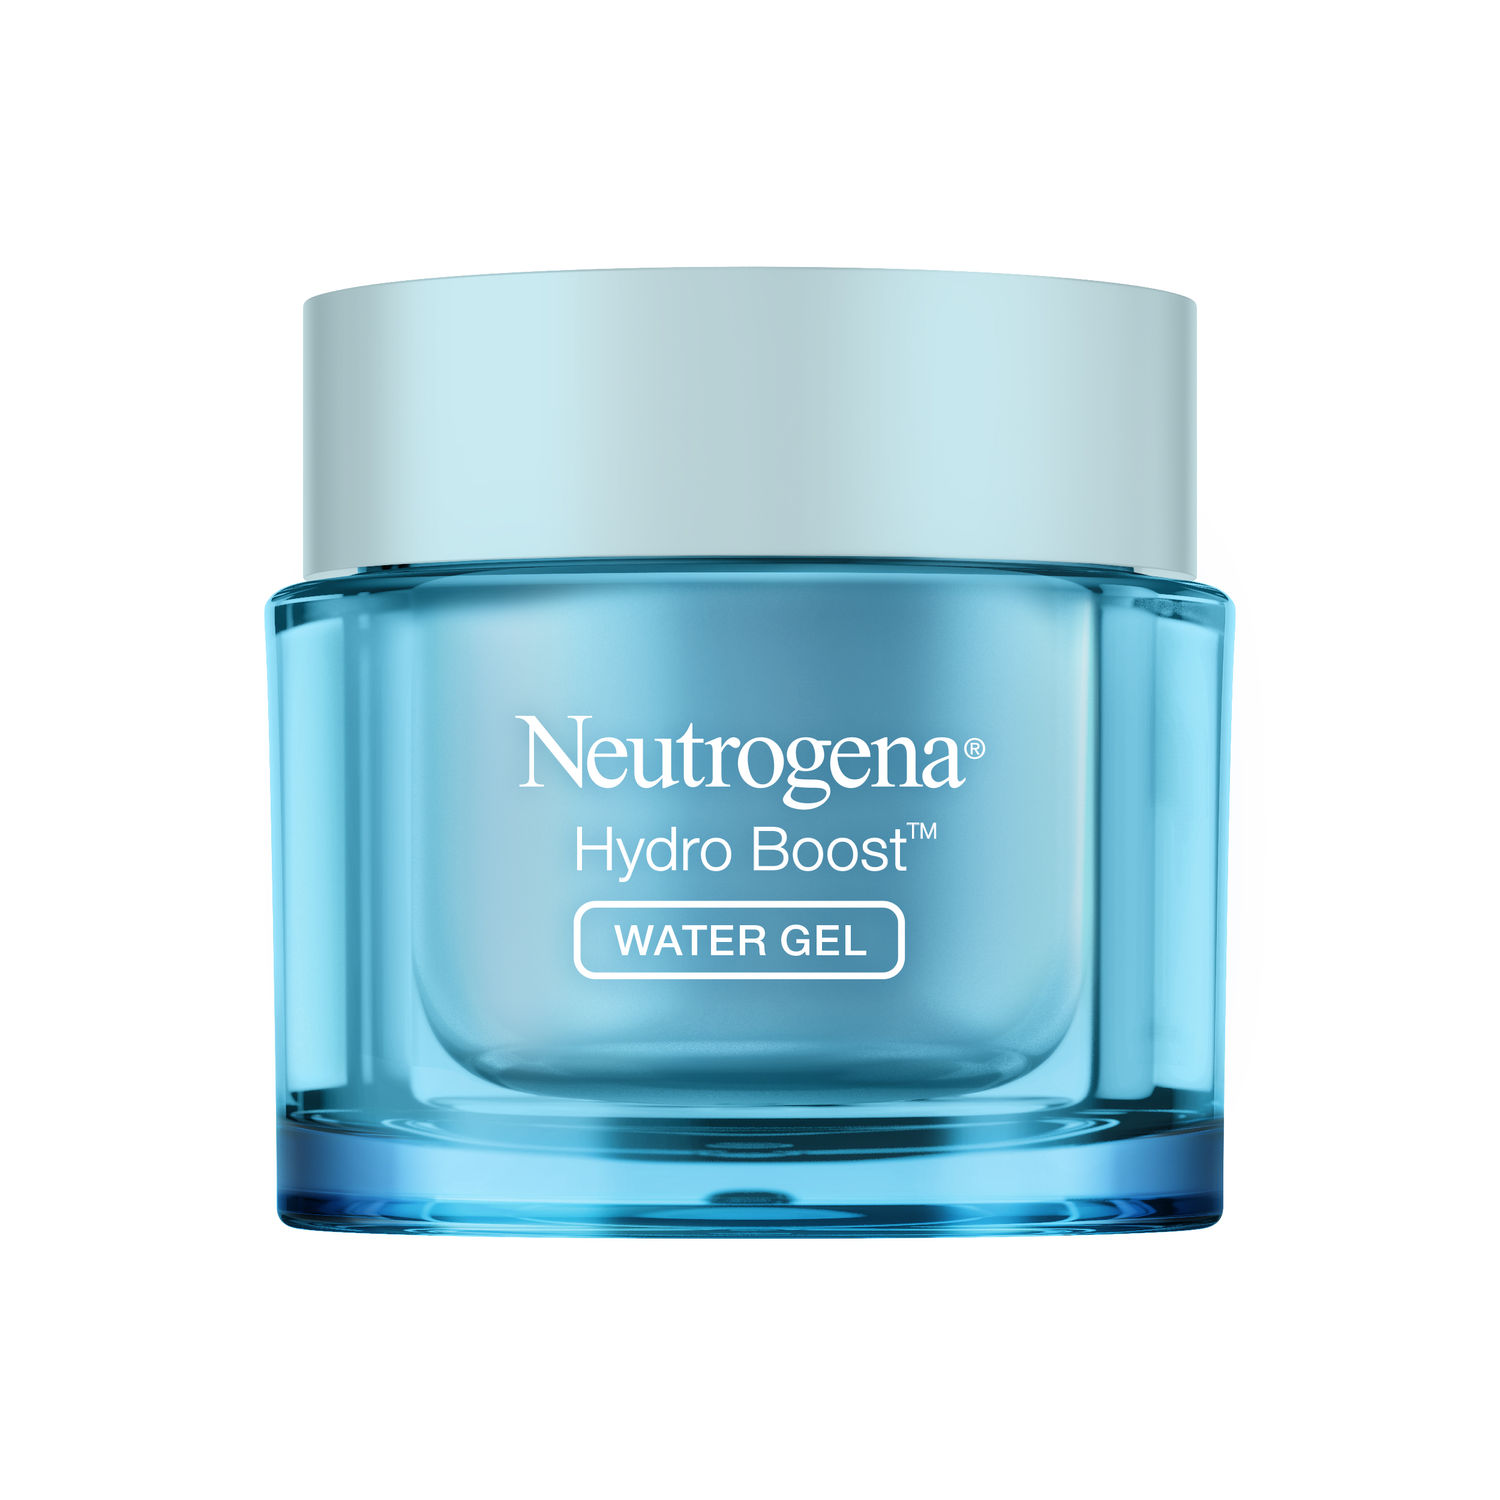 Buy Neutrogena Hydro Boost Water Gel 15g - Purplle